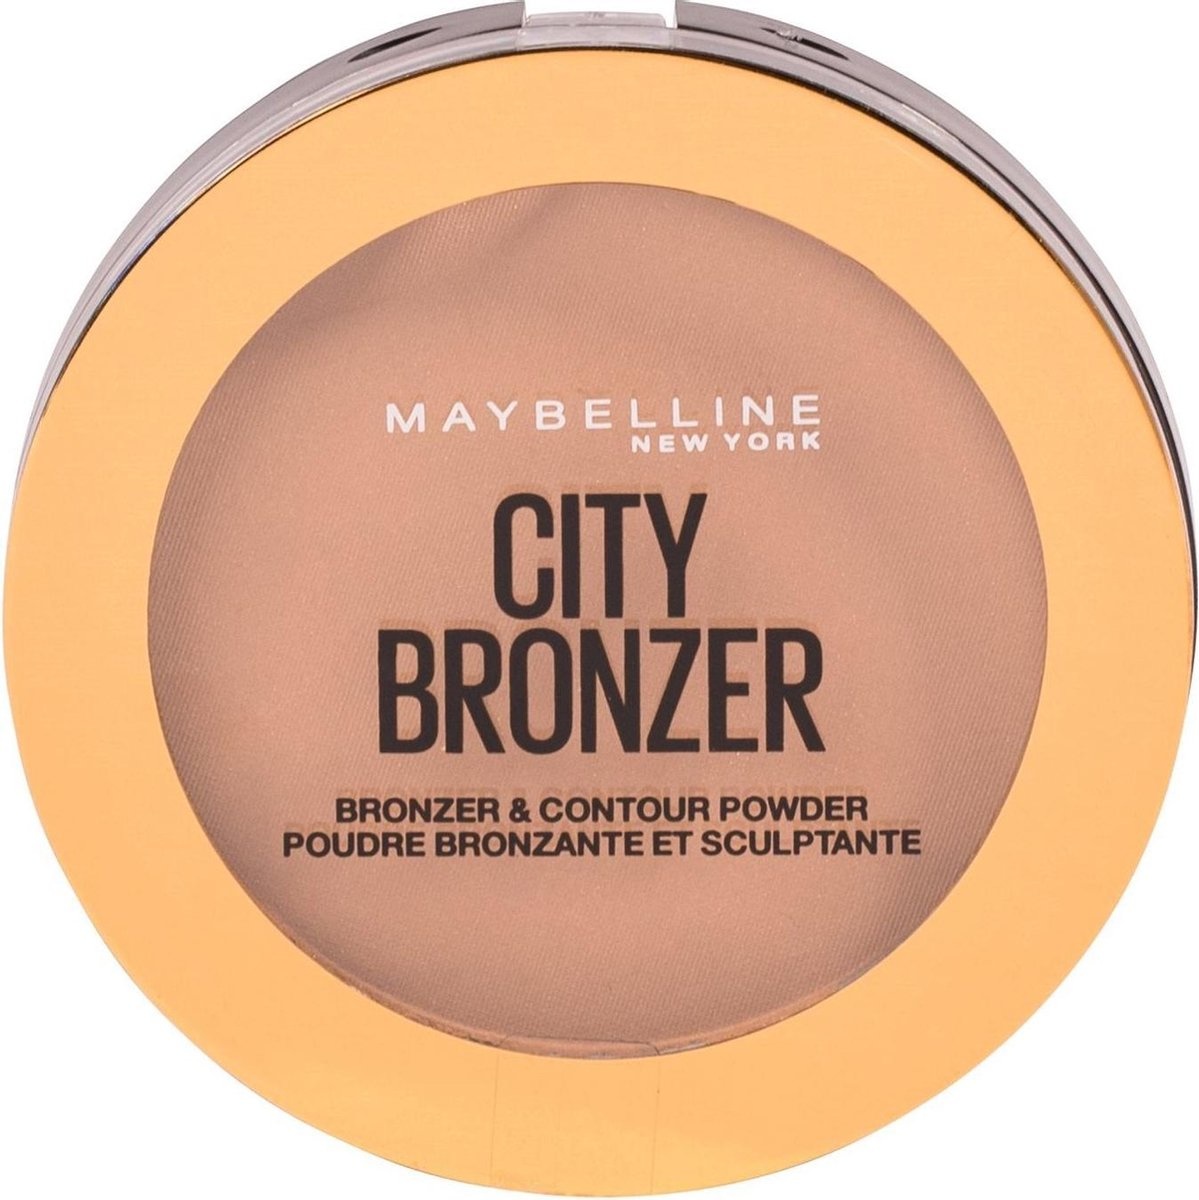 Maybelline Facestudio City Bronzer - 200 Medium Cool - Bronzer und Contouring Powder